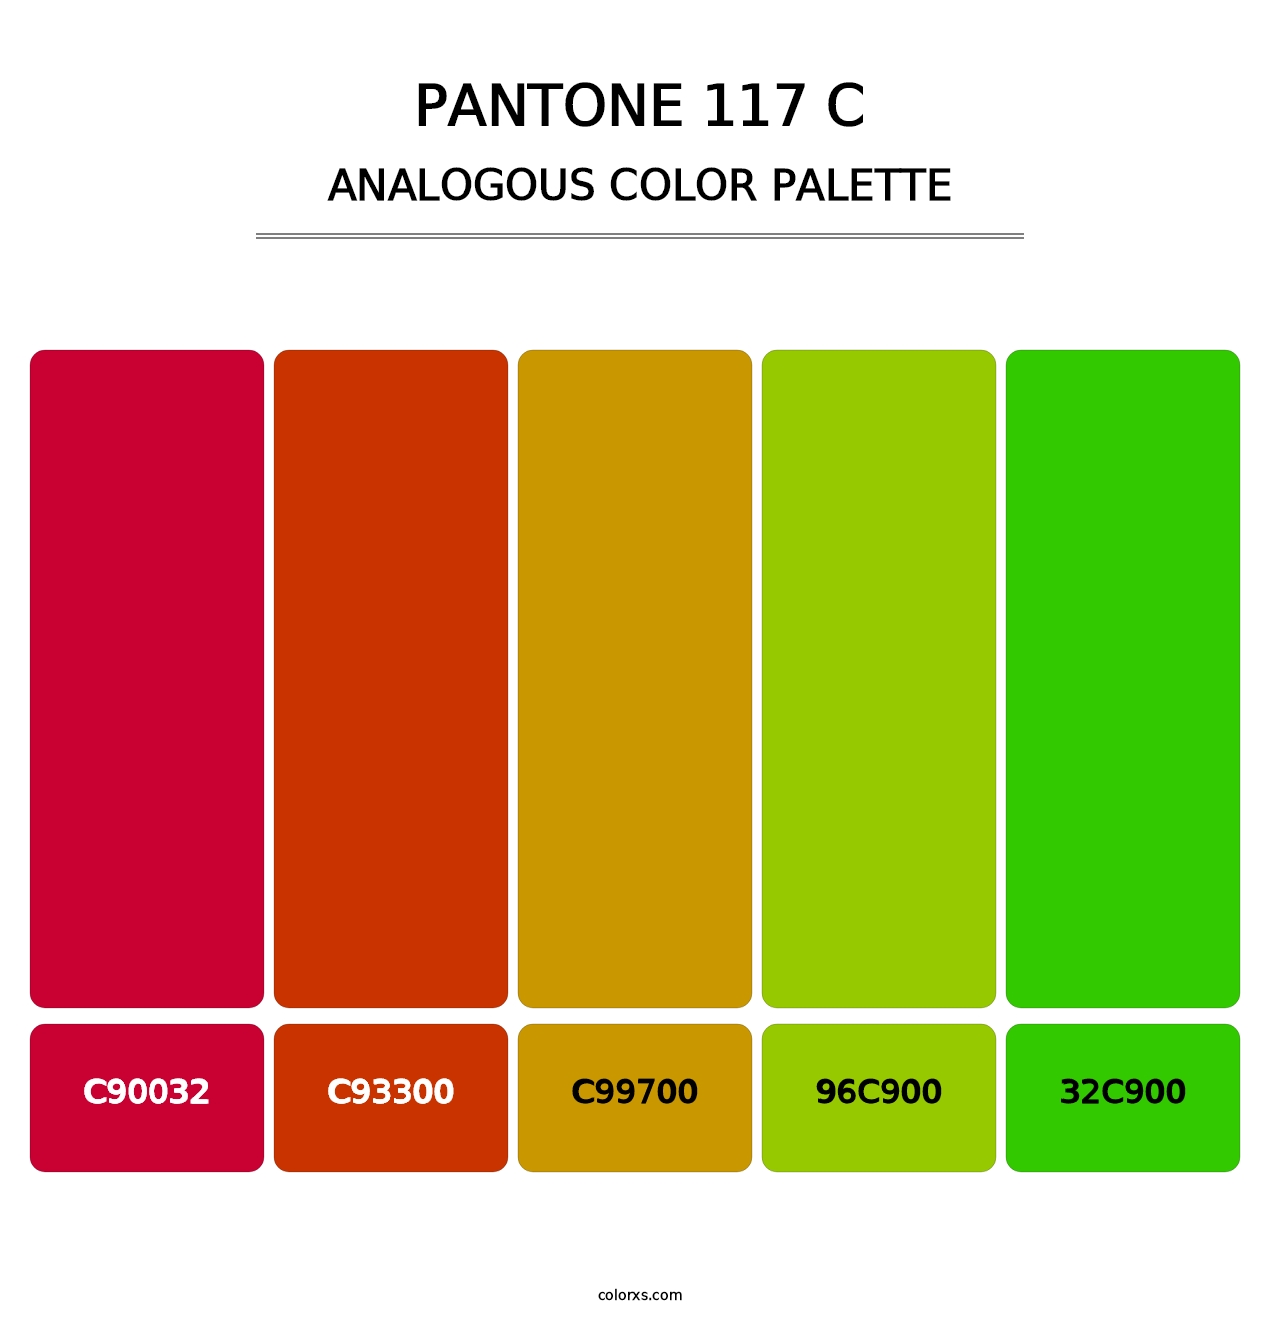 PANTONE 117 C - Analogous Color Palette